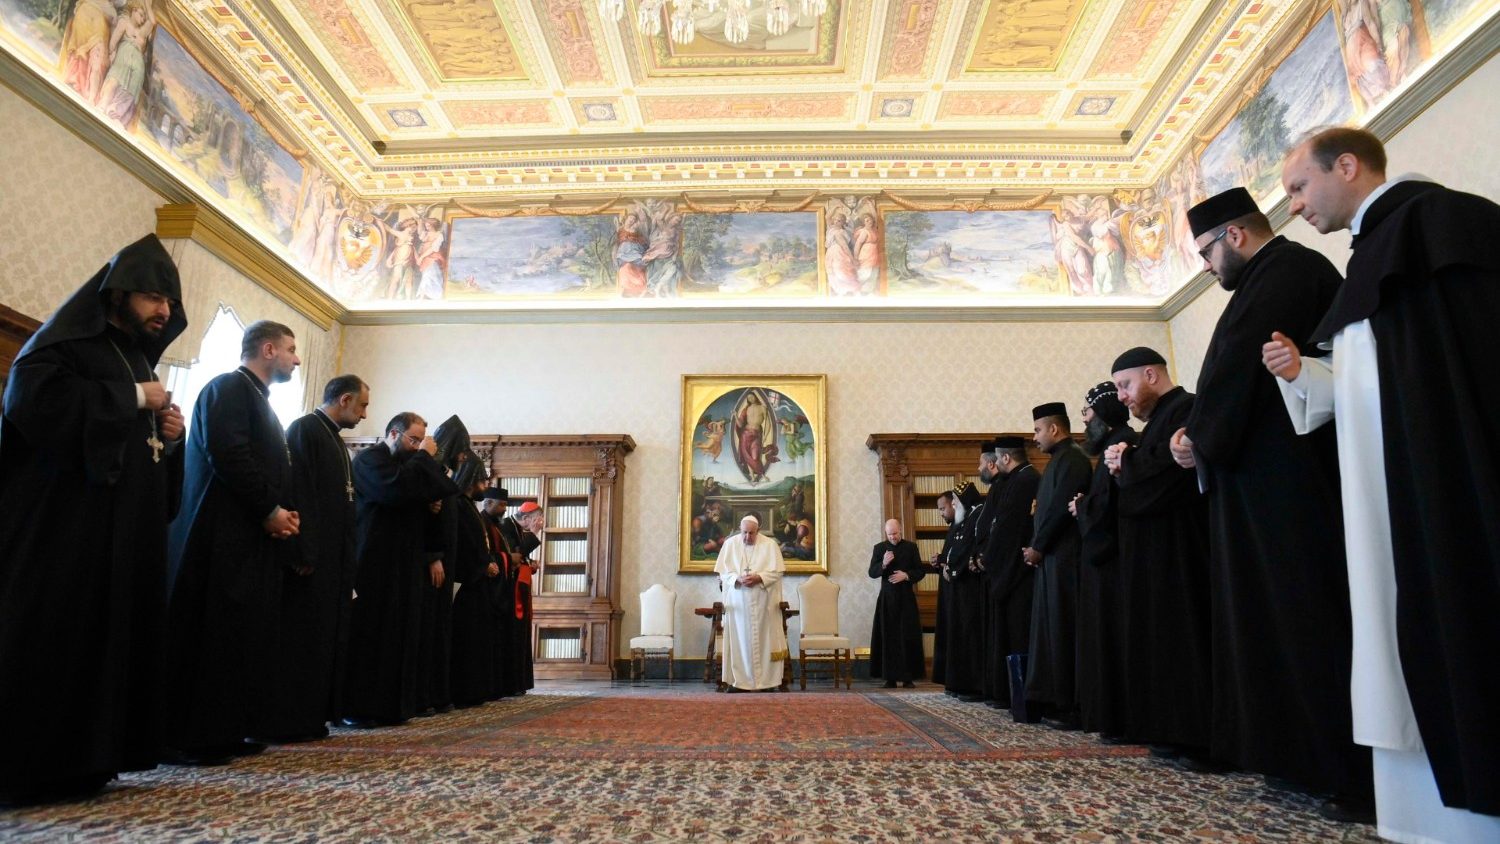 Папа: частные интересы не должны мешать христианскому единству